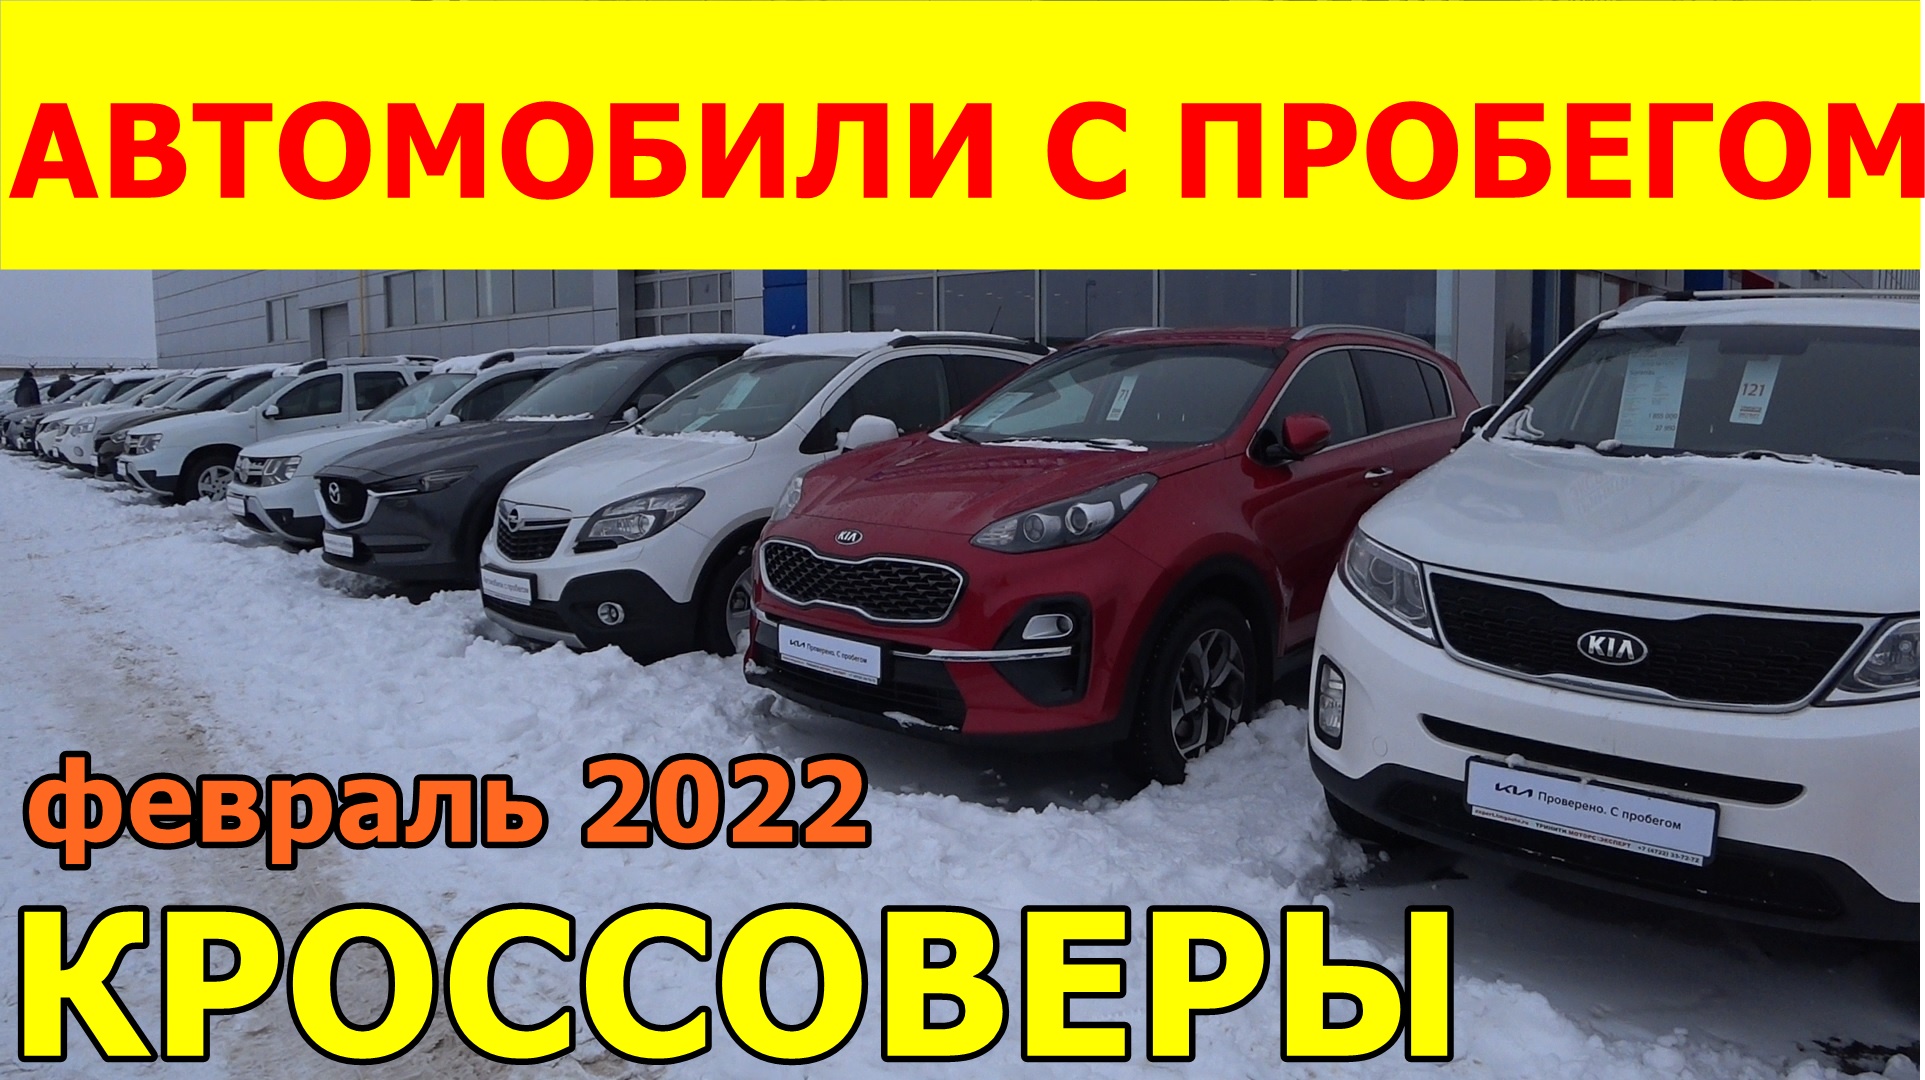 Автомобили С Пробегом Цены февраль 2022.mp4